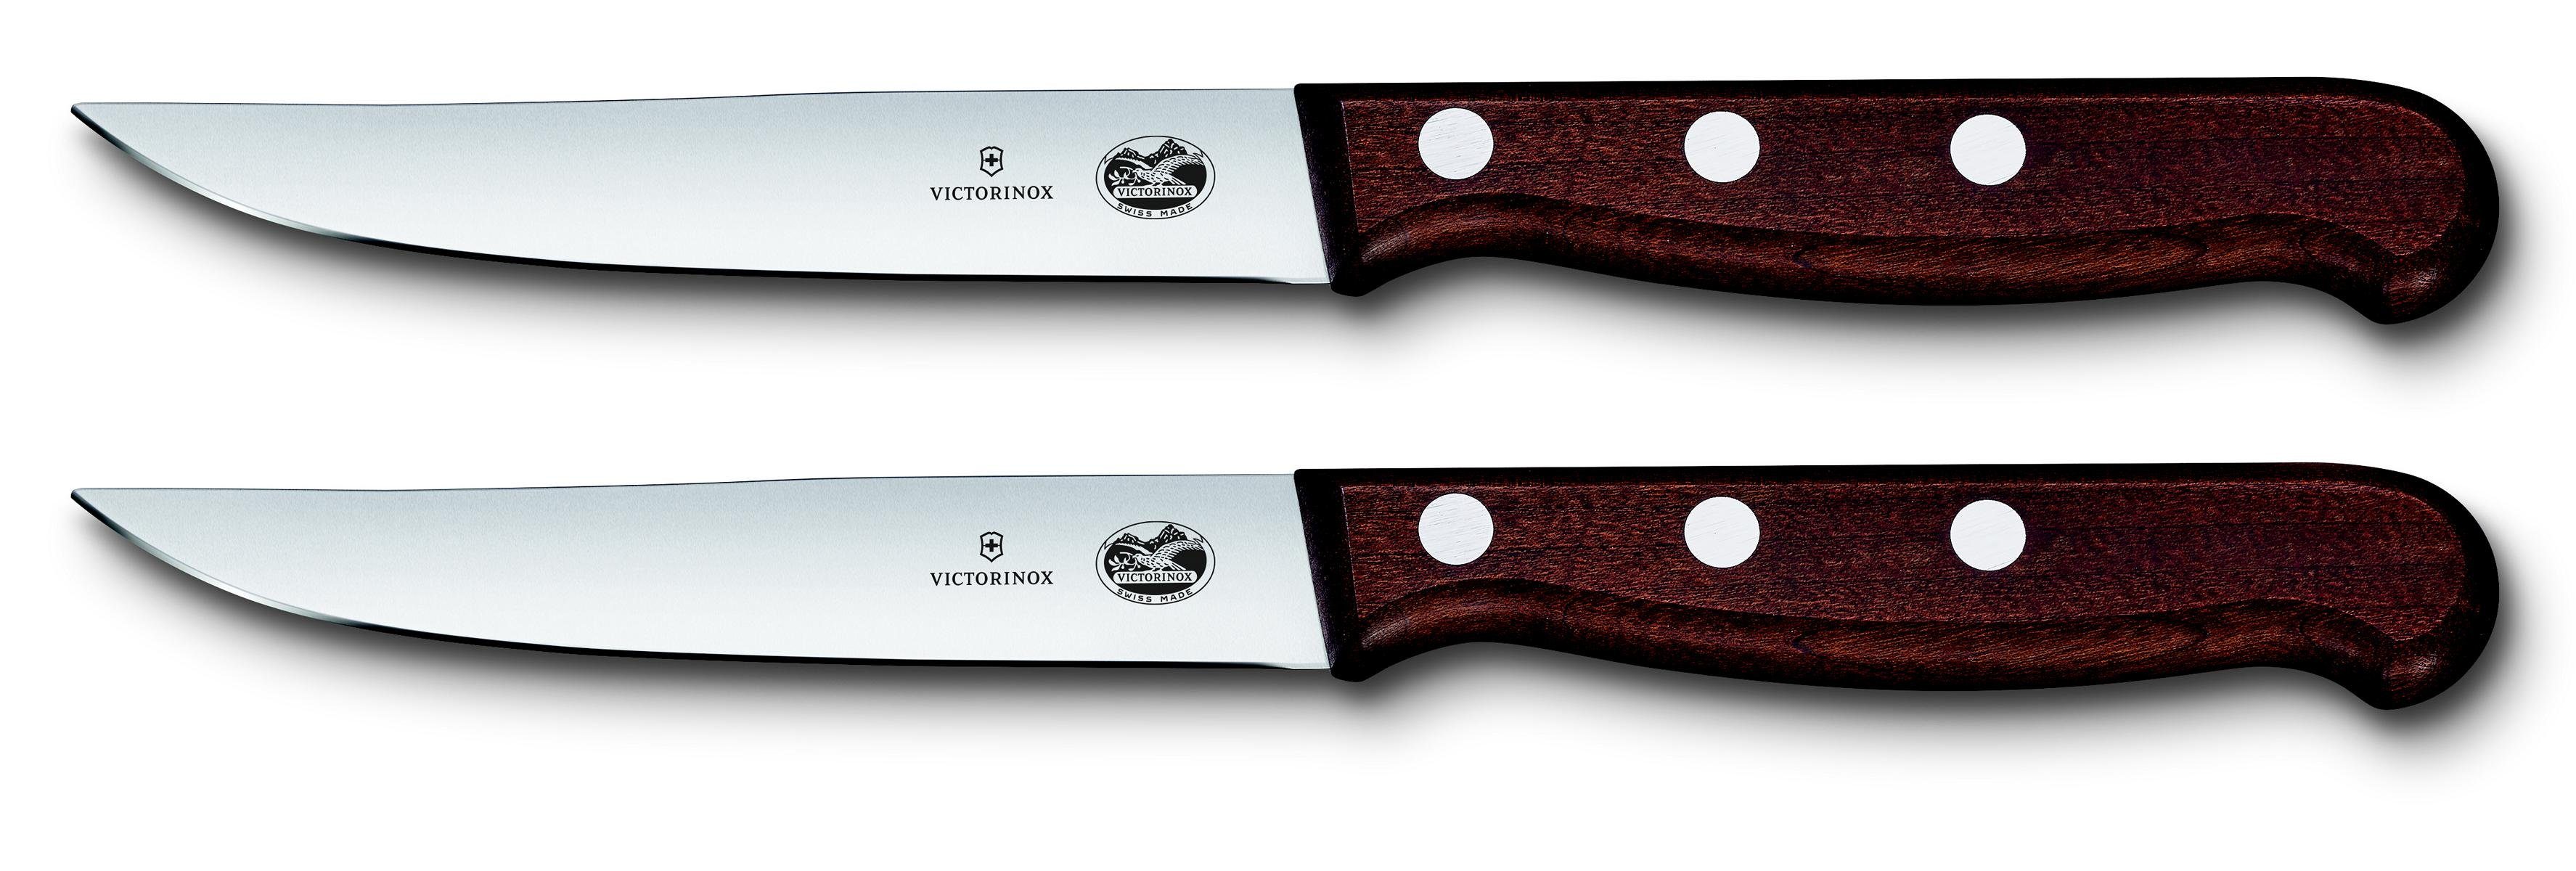 Victorinox Taschenmesser ger Ahornholz, Steakmesser-Set, Schliff,12 cm,2-teilig,Gesch. mod